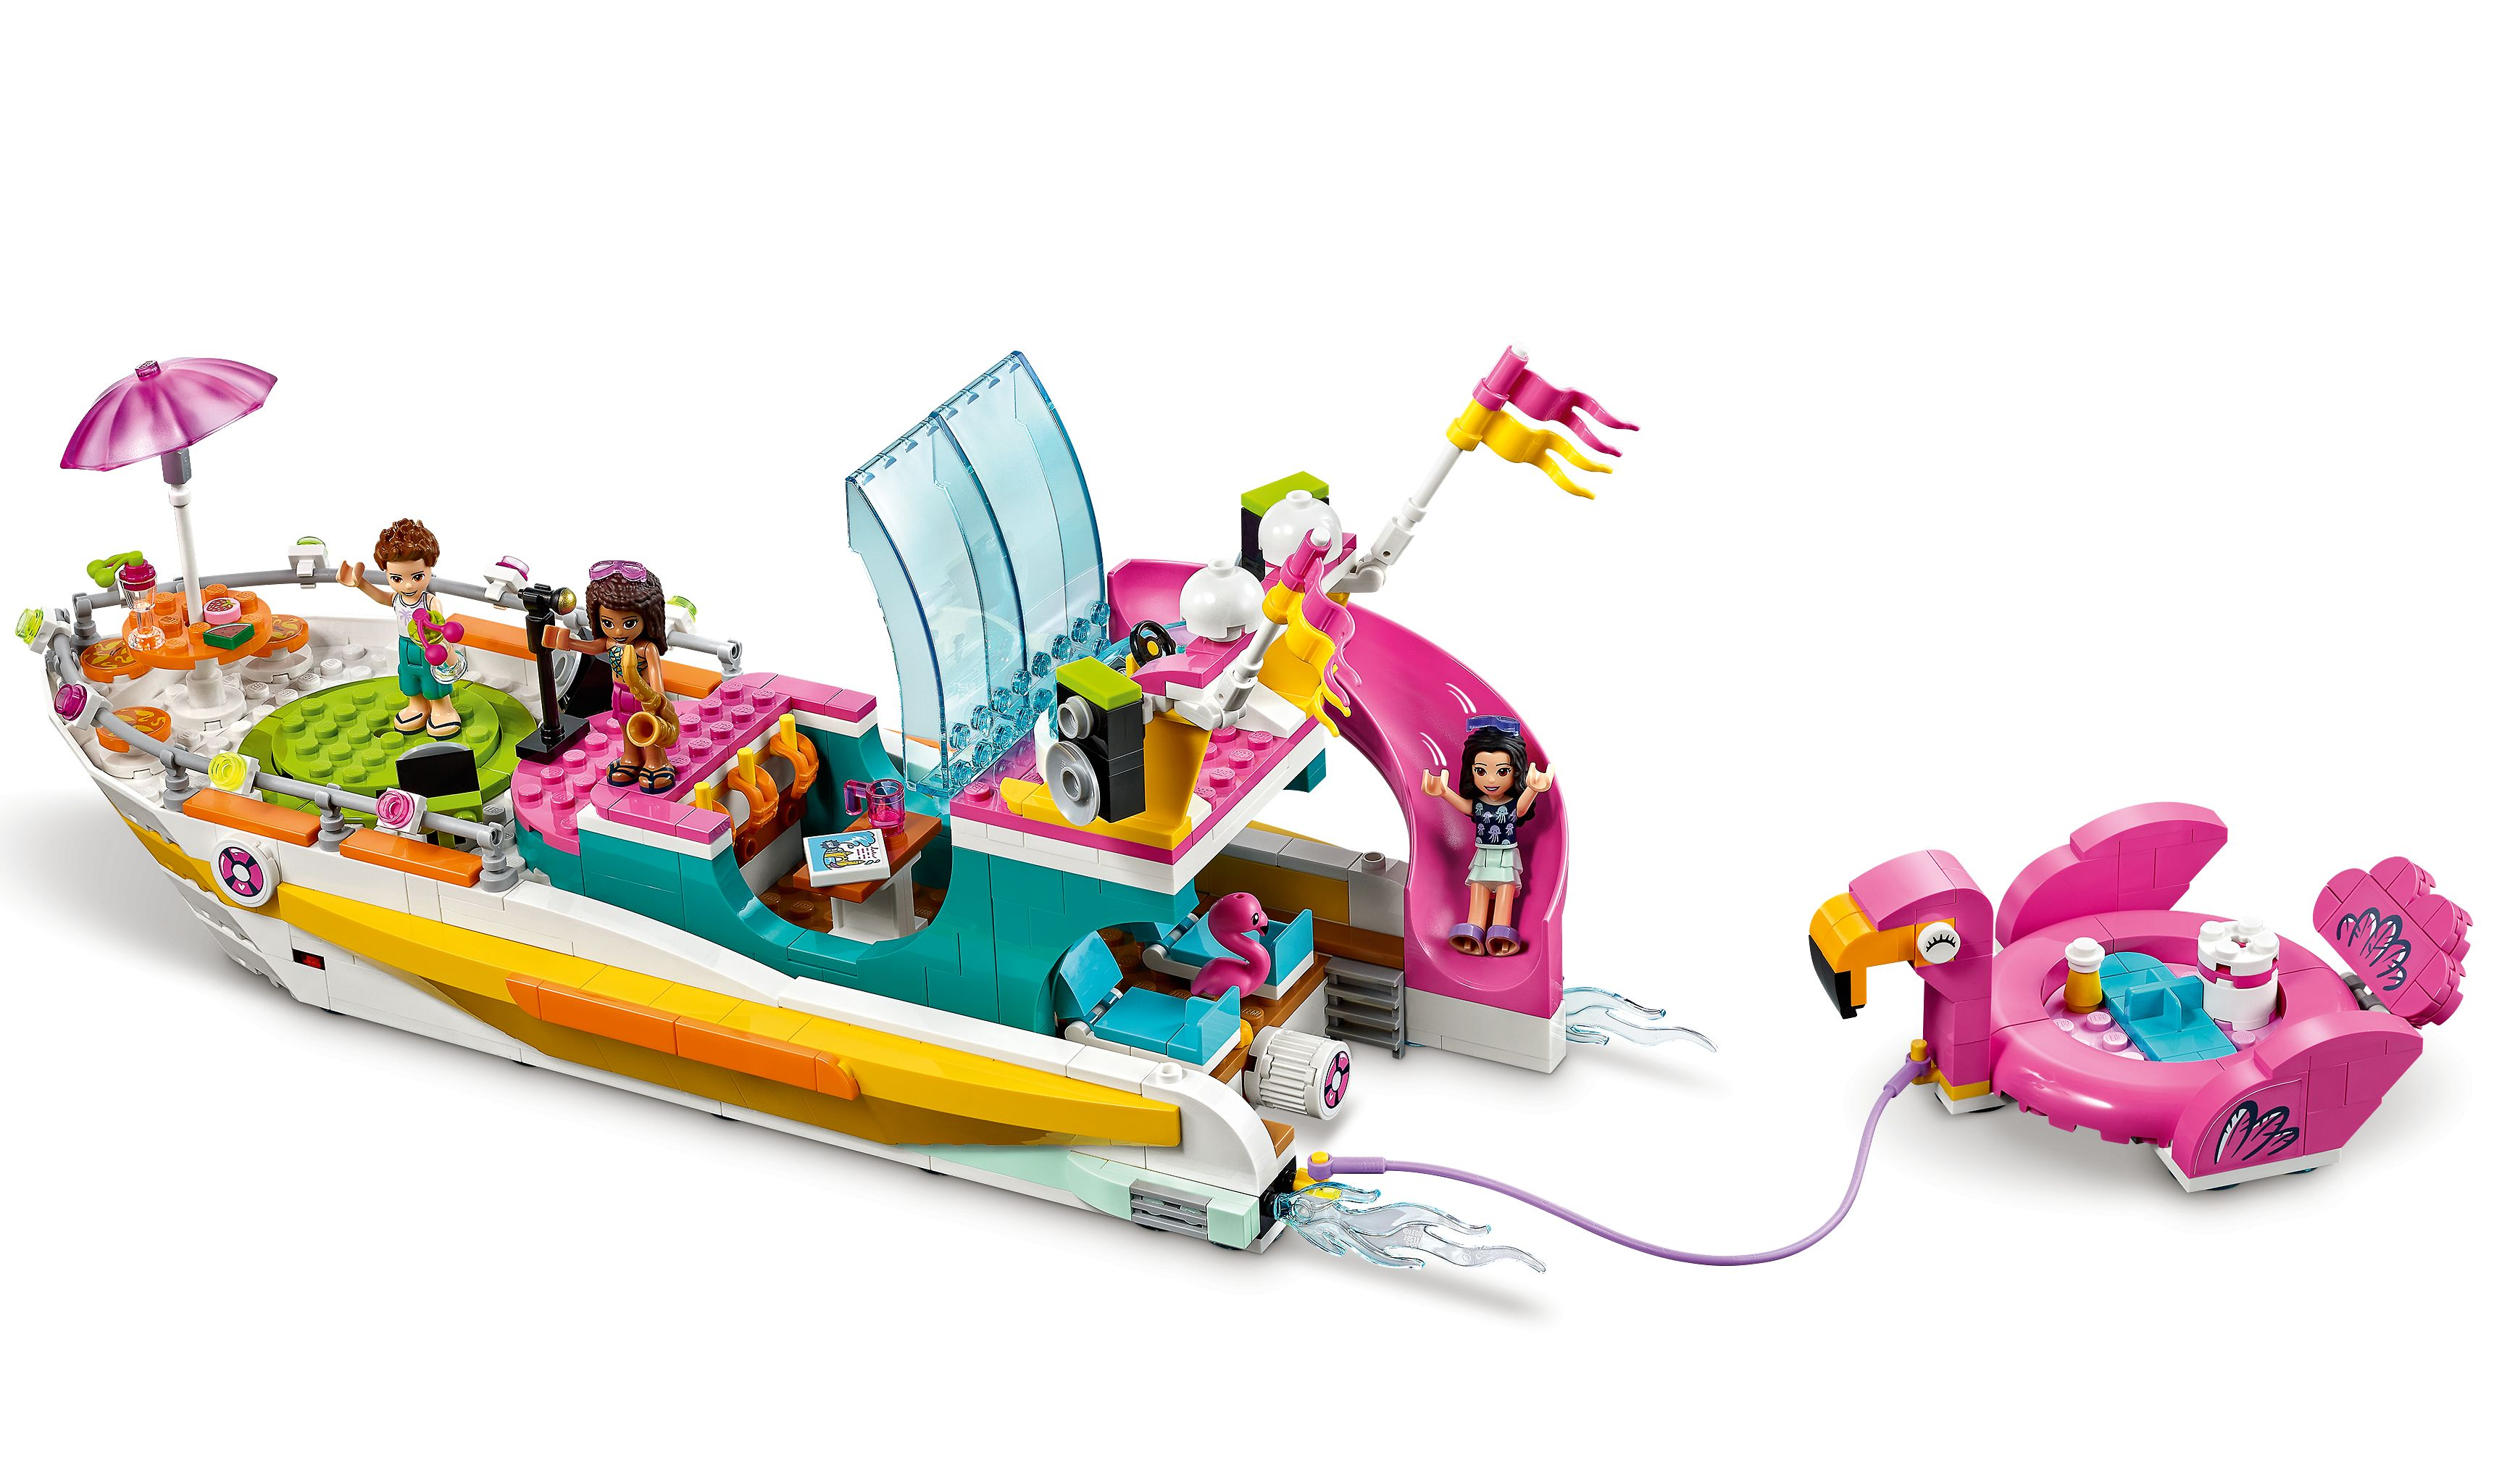 LEGO 41433 Partyboot Heartlake von City Bausatz